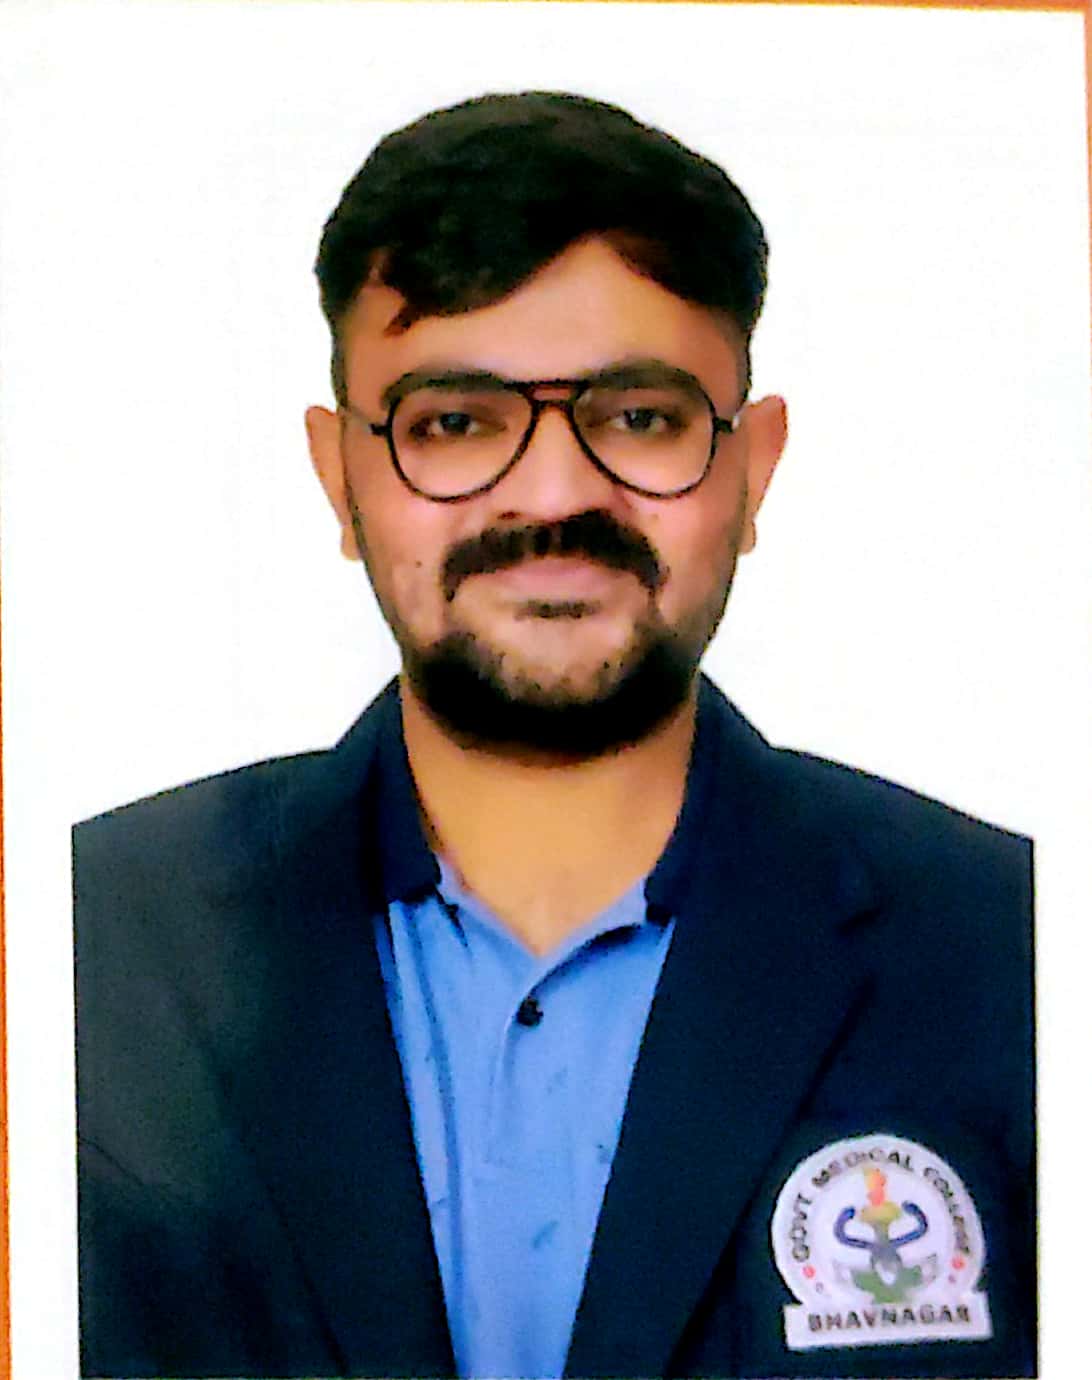 Dr. Jaimish Sureshbhai Patel